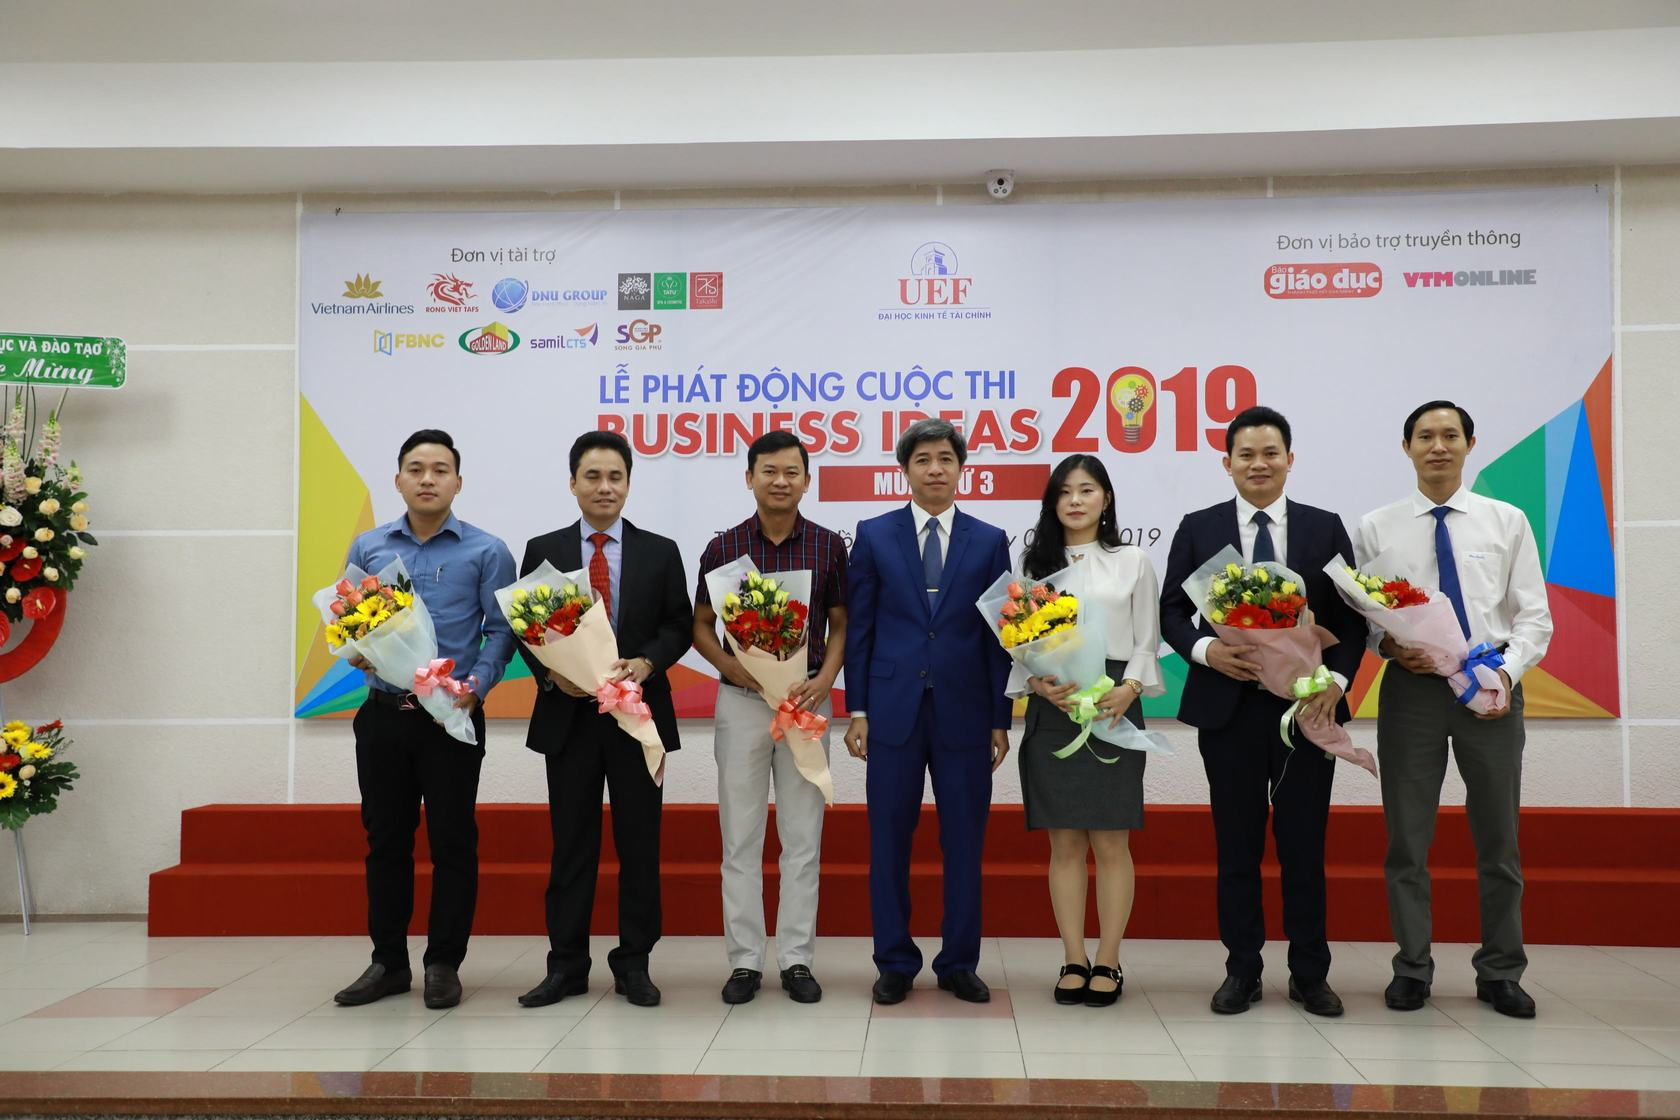 39 ý tưởng tranh tài tại vòng bán kết cuộc thi “Ý tưởng kinh doanh – Business Ideas 2019”.